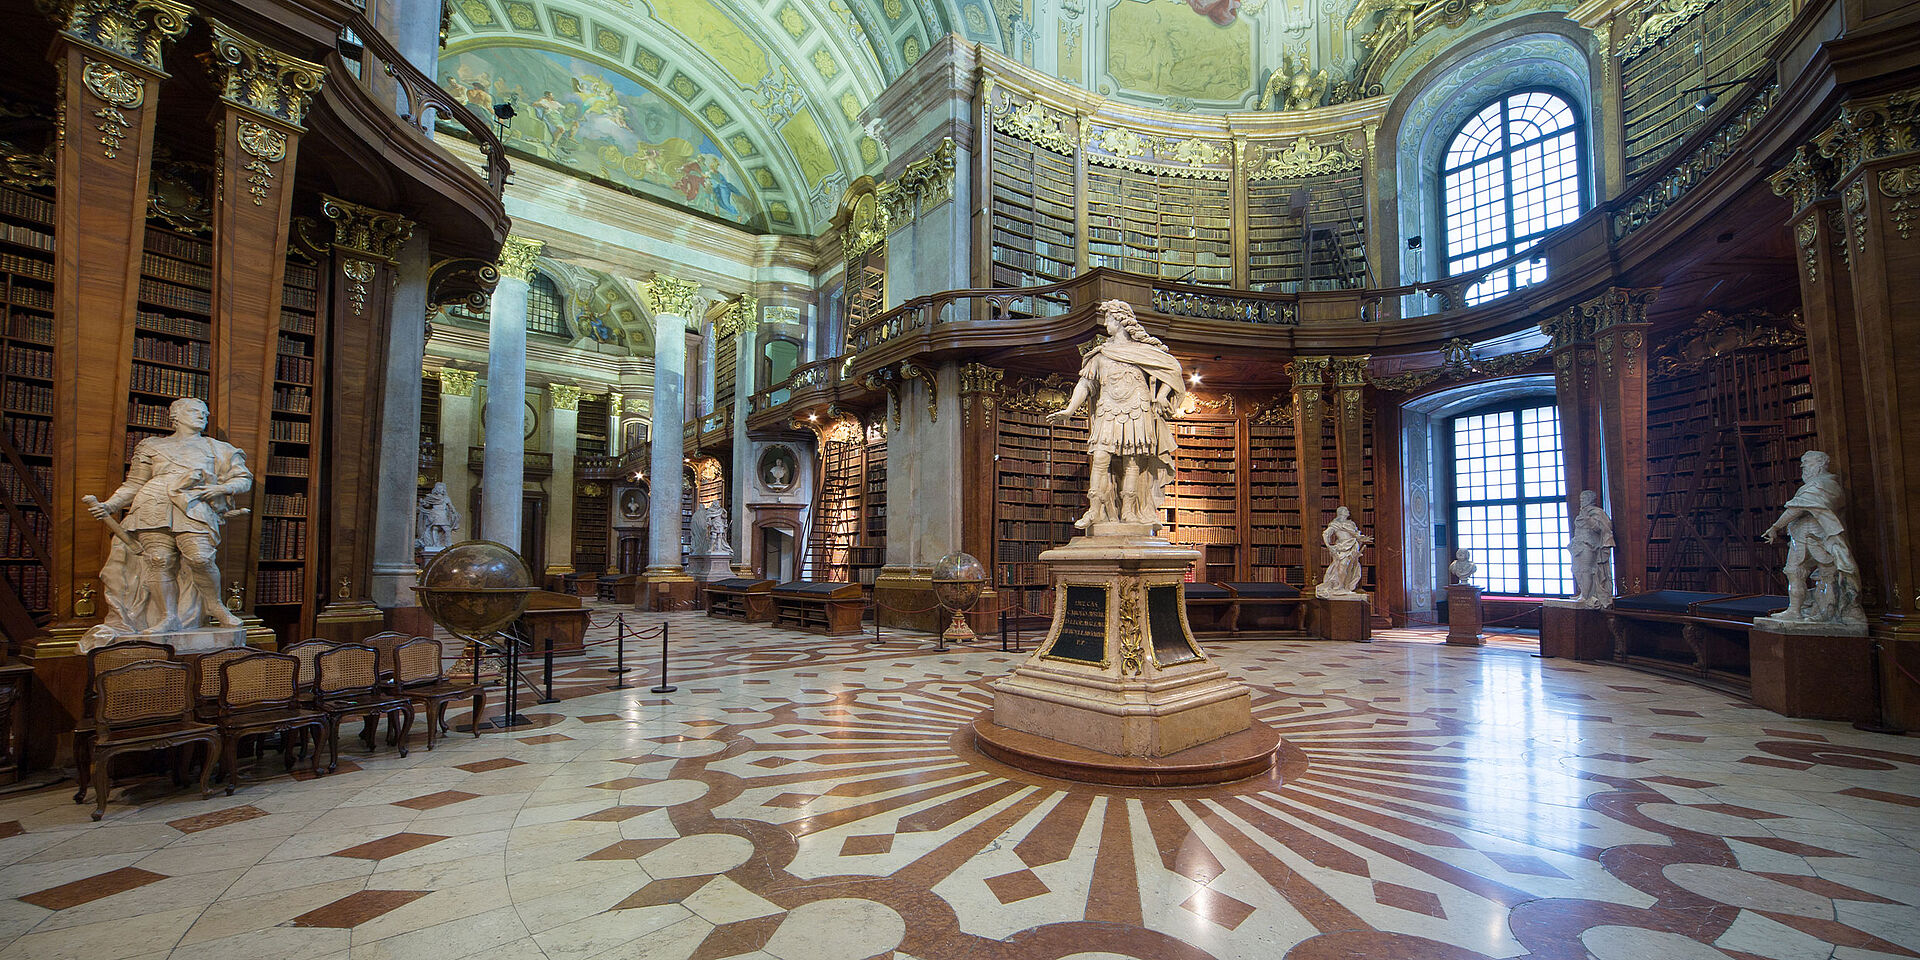 Foto von einem barocken Marmorsaal mit Bücherregalen und Statuen